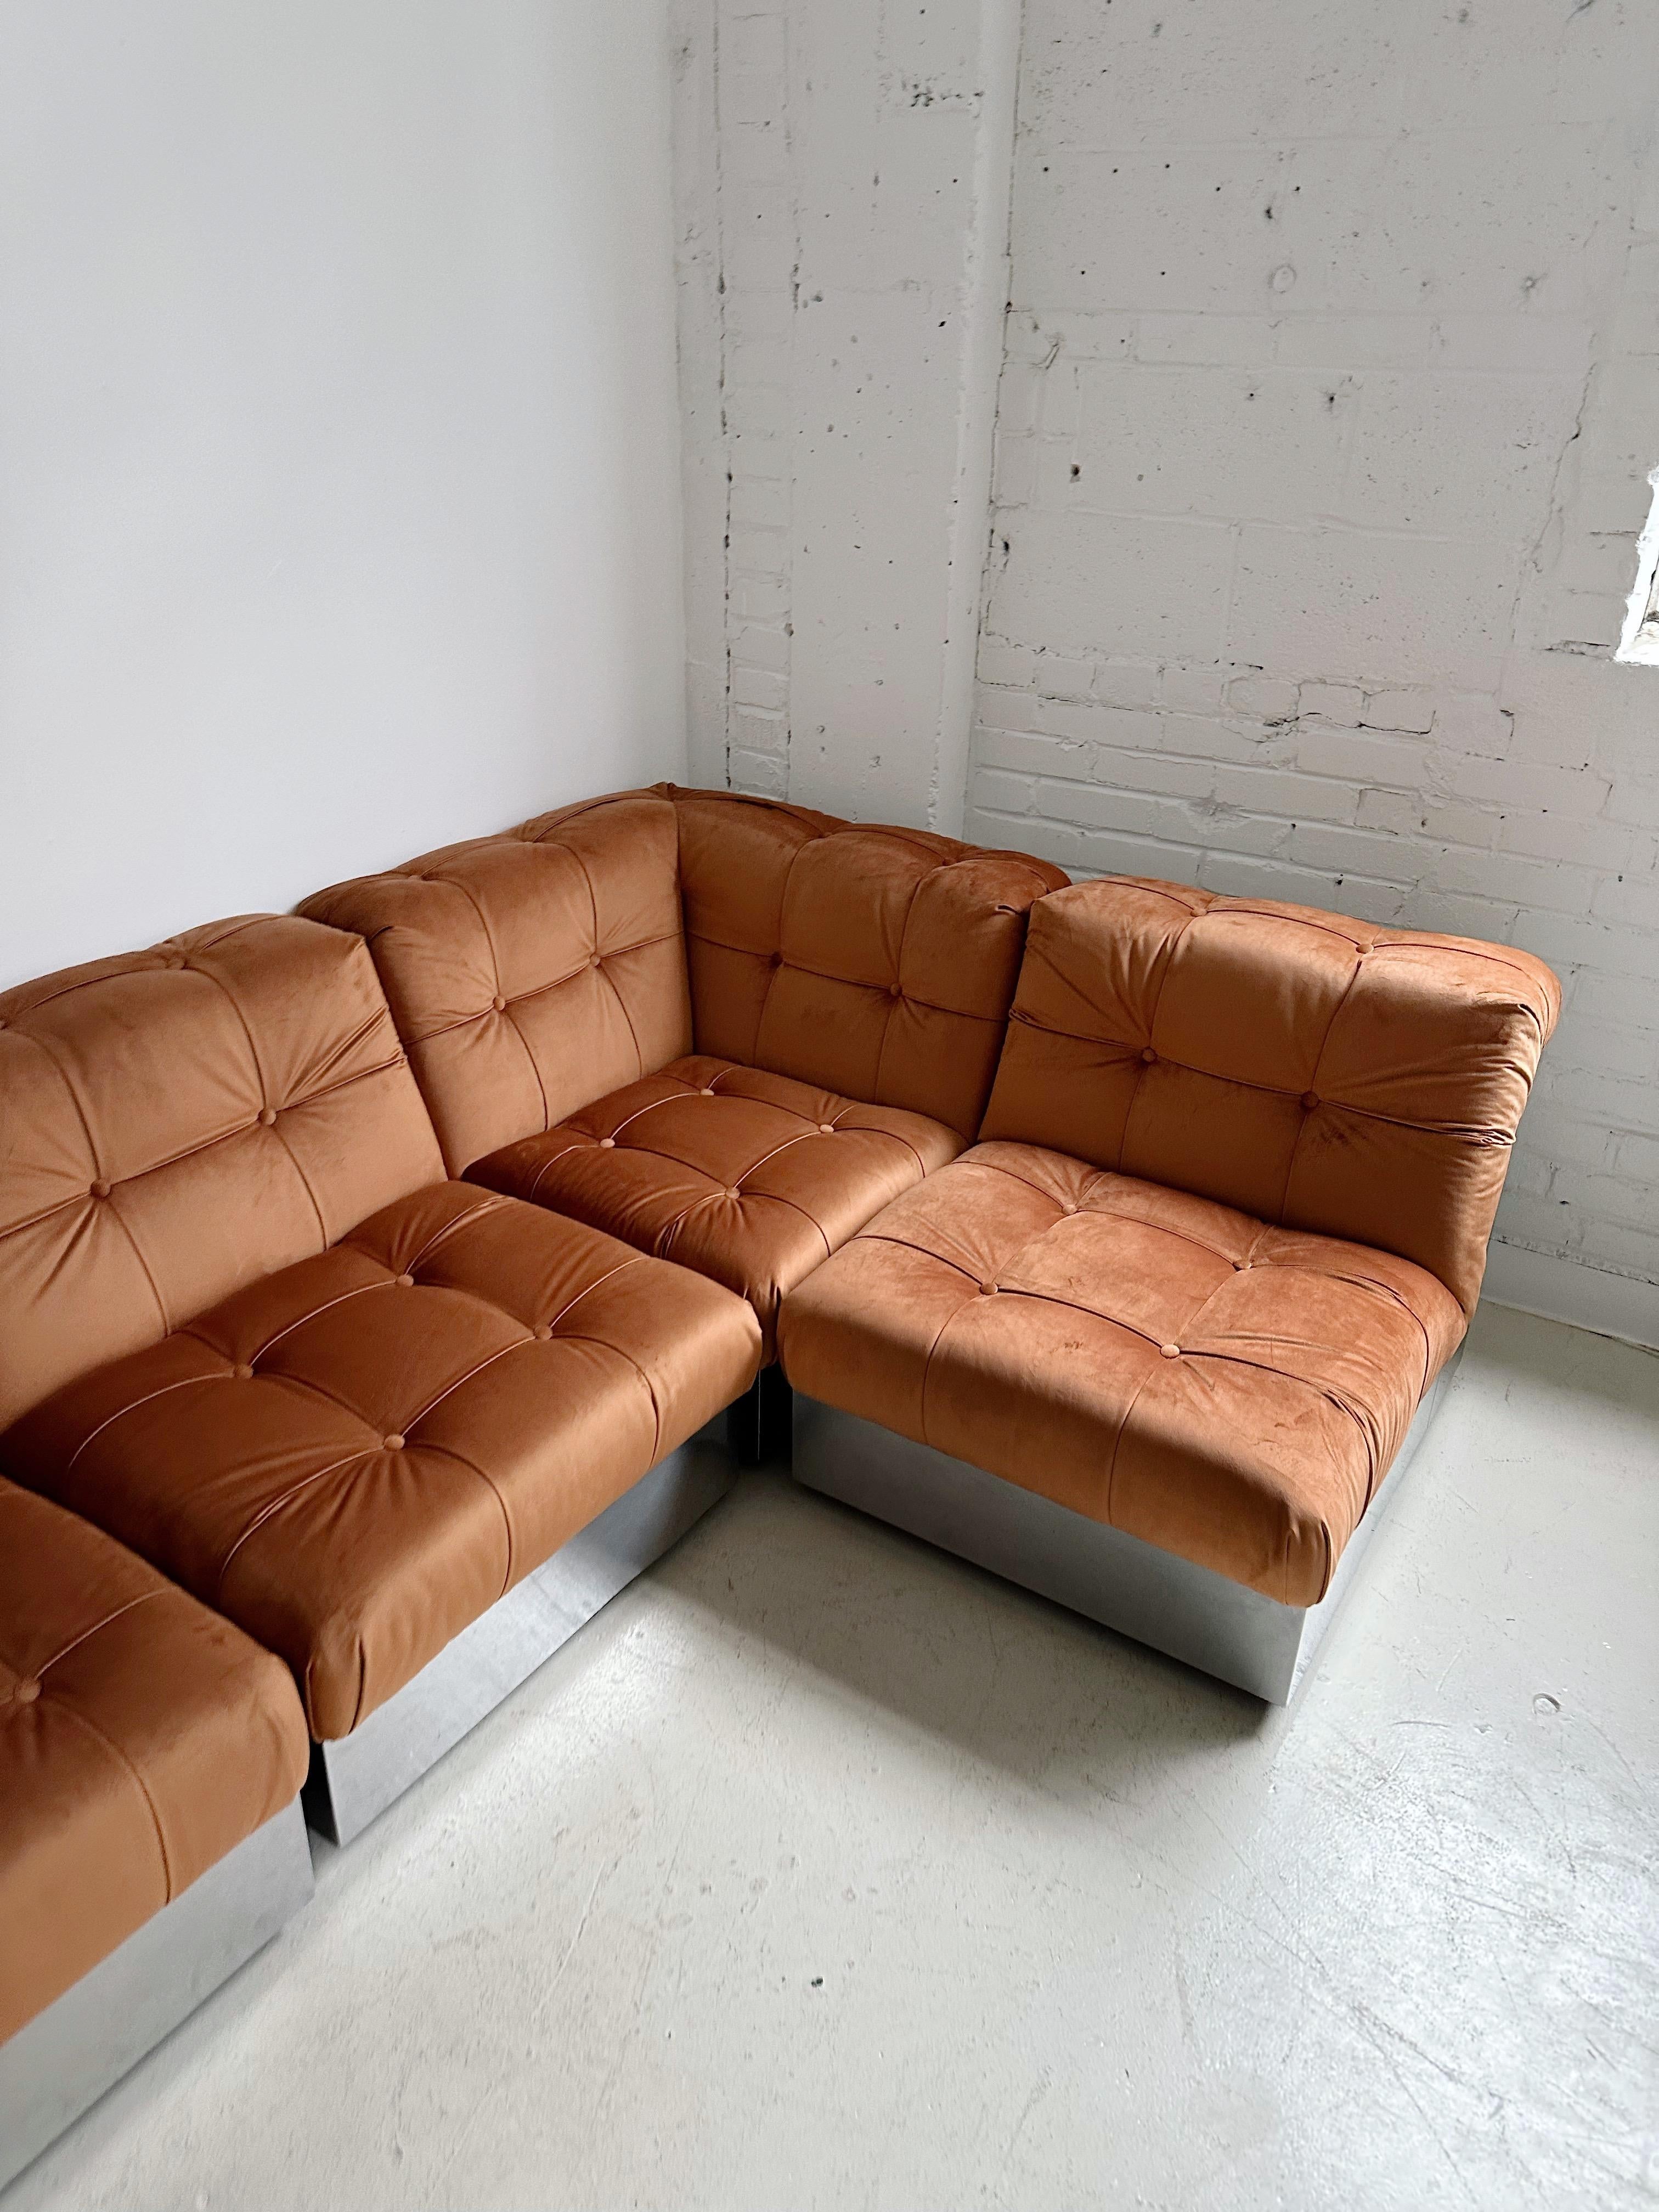 Samt & Stahlgestell 4 Pieces Modulares Sofa att. to Canasta by Giorgio Montani 6